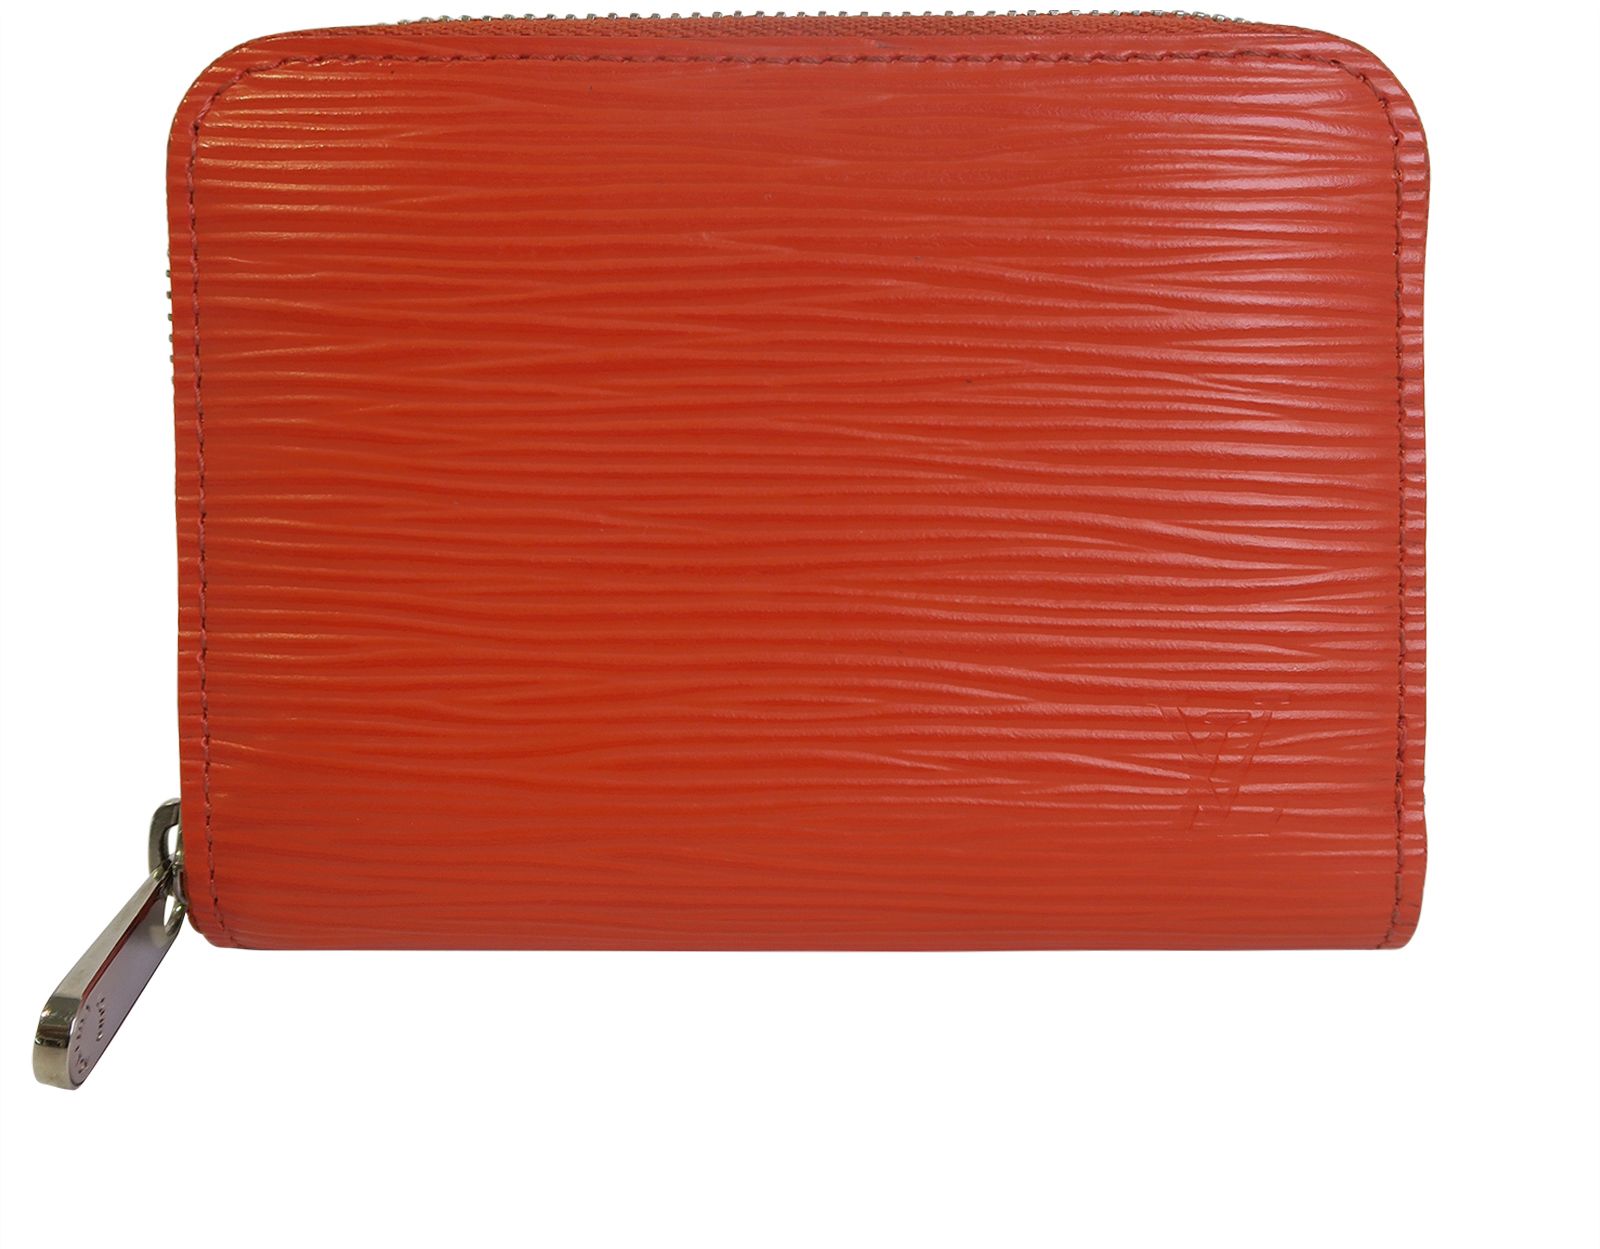 Louis Vuitton Epi Wallet for sale